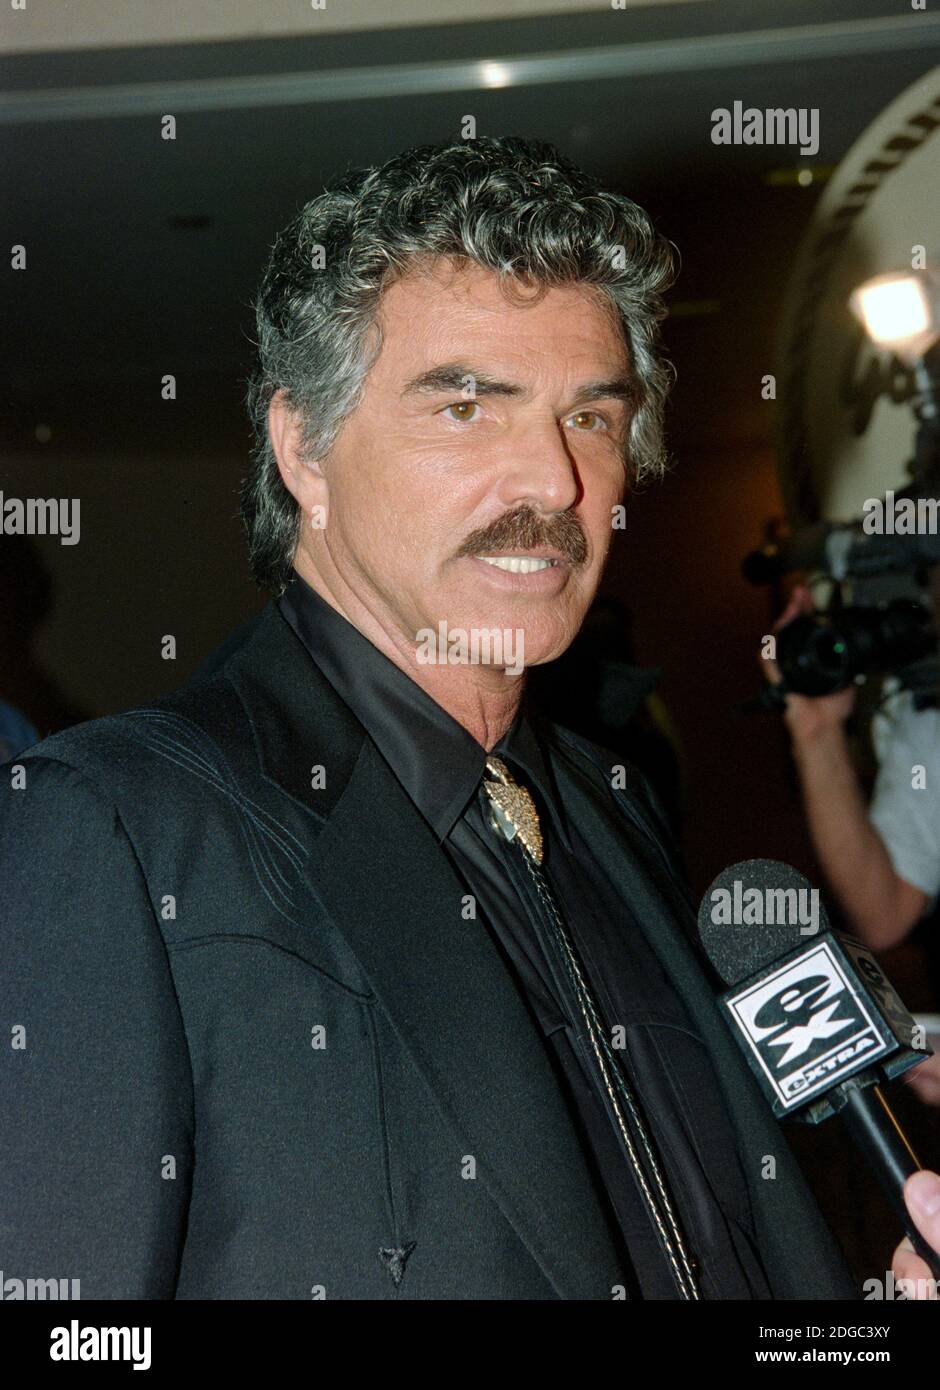 ARCHIVIO: LOS ANGELES, CA. 12 agosto 1995: Attore Burt Reynolds al Golden Boot Awards al Century Plaza Hotel di Los Angeles. Foto del file © Paul Smith/Caratteristiche Foto Stock